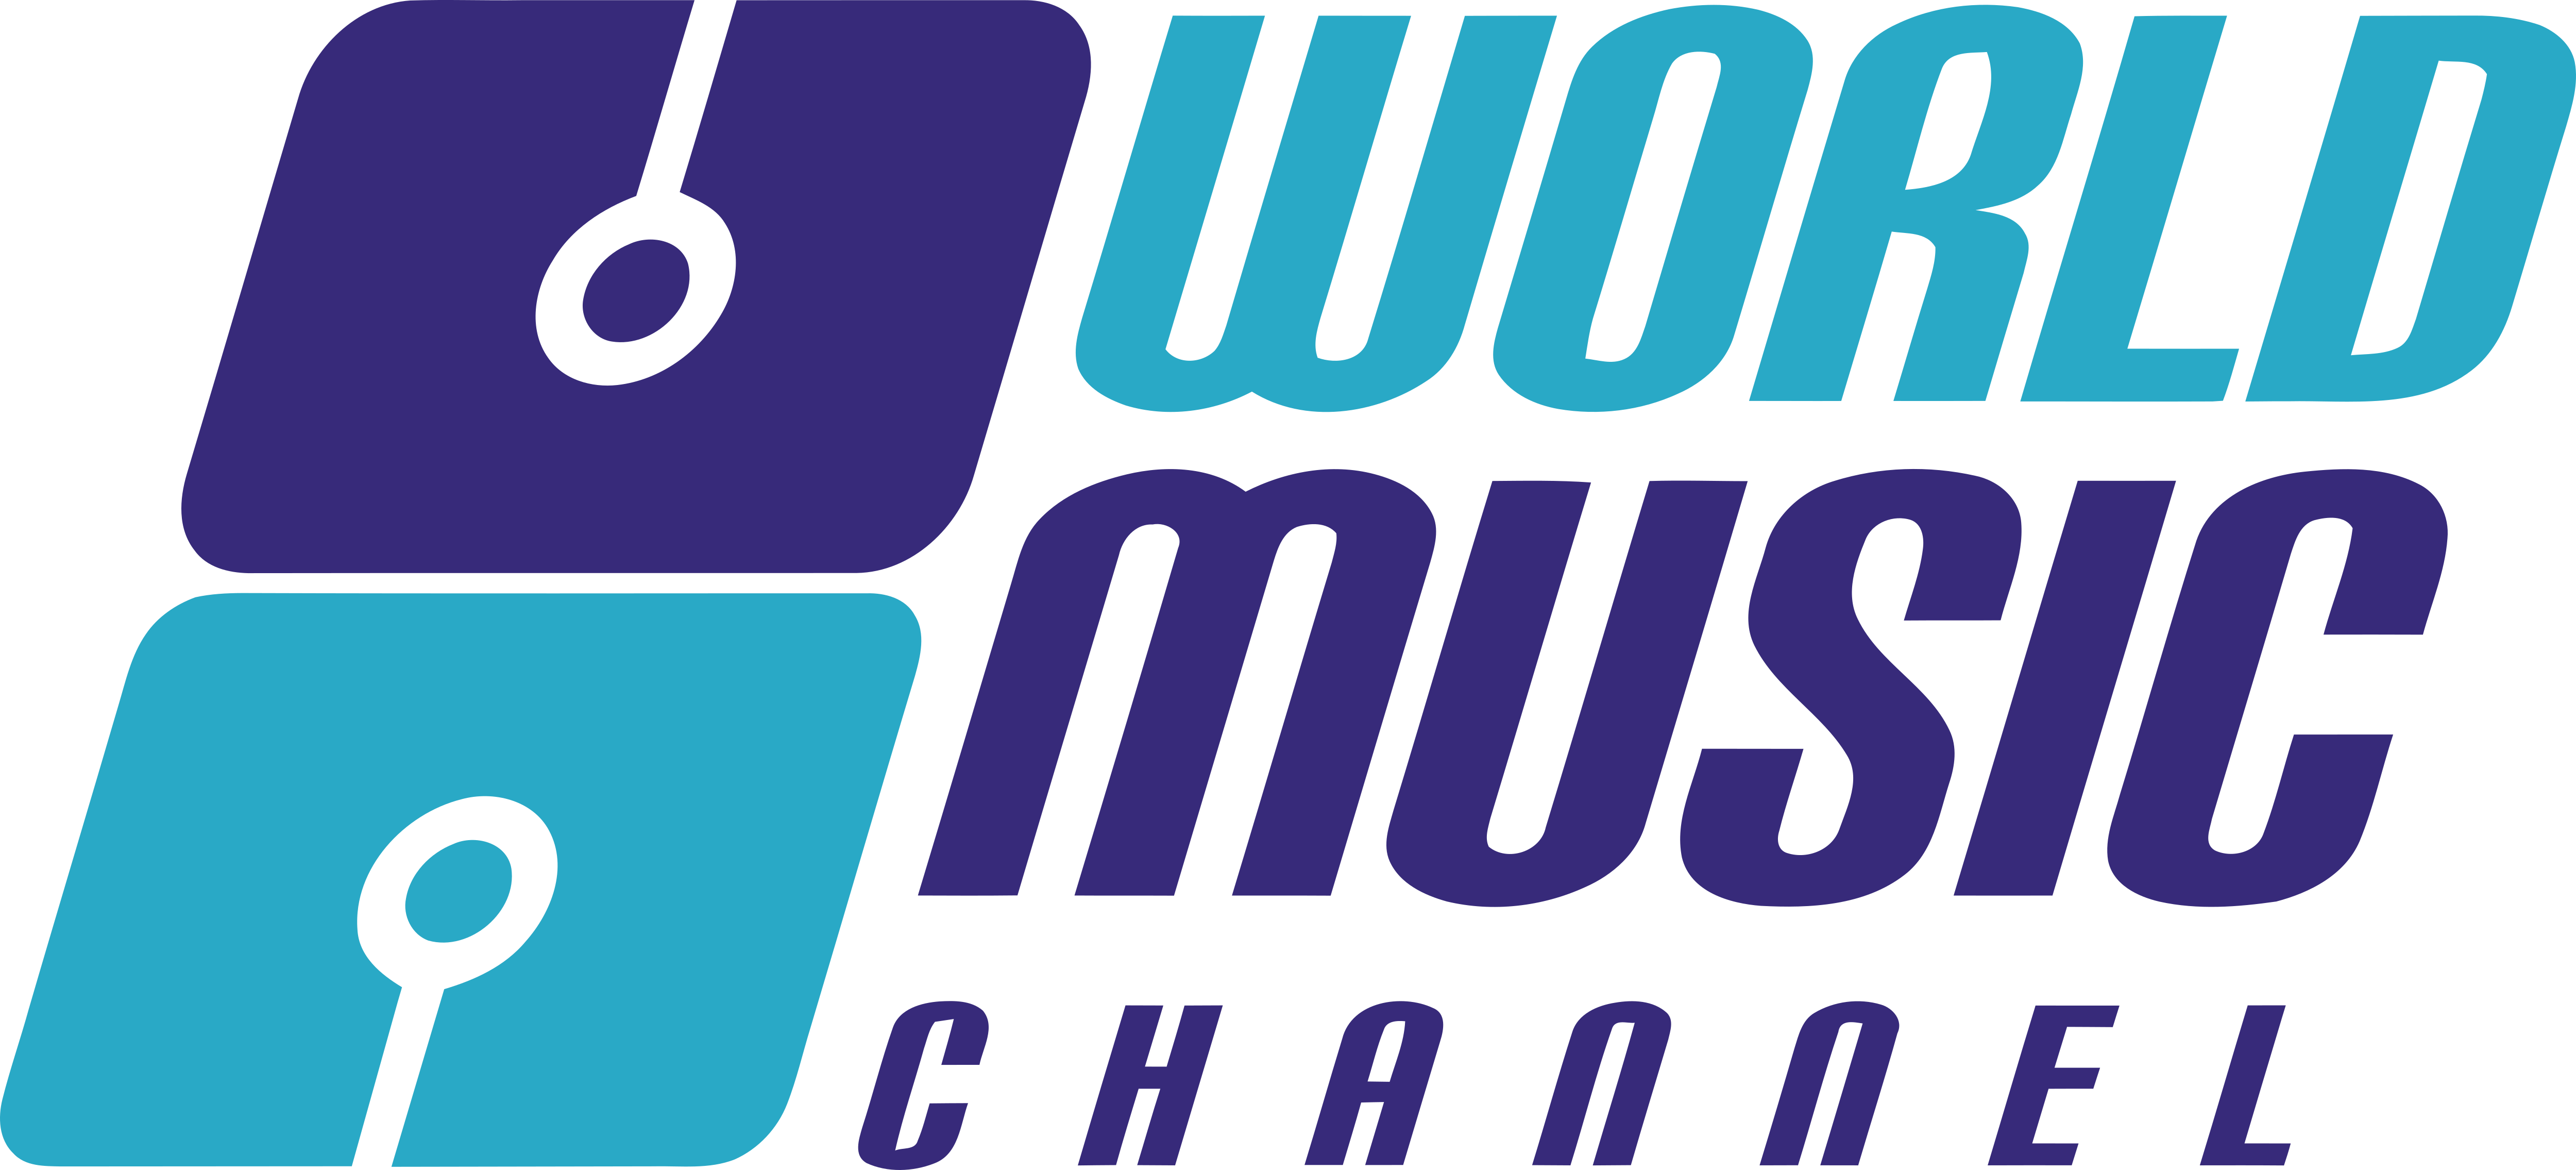 Показать музыкальный канал. Логотипы музыкальных каналов. World Music channel. World Music channel логотип. Музыкальные каналы.